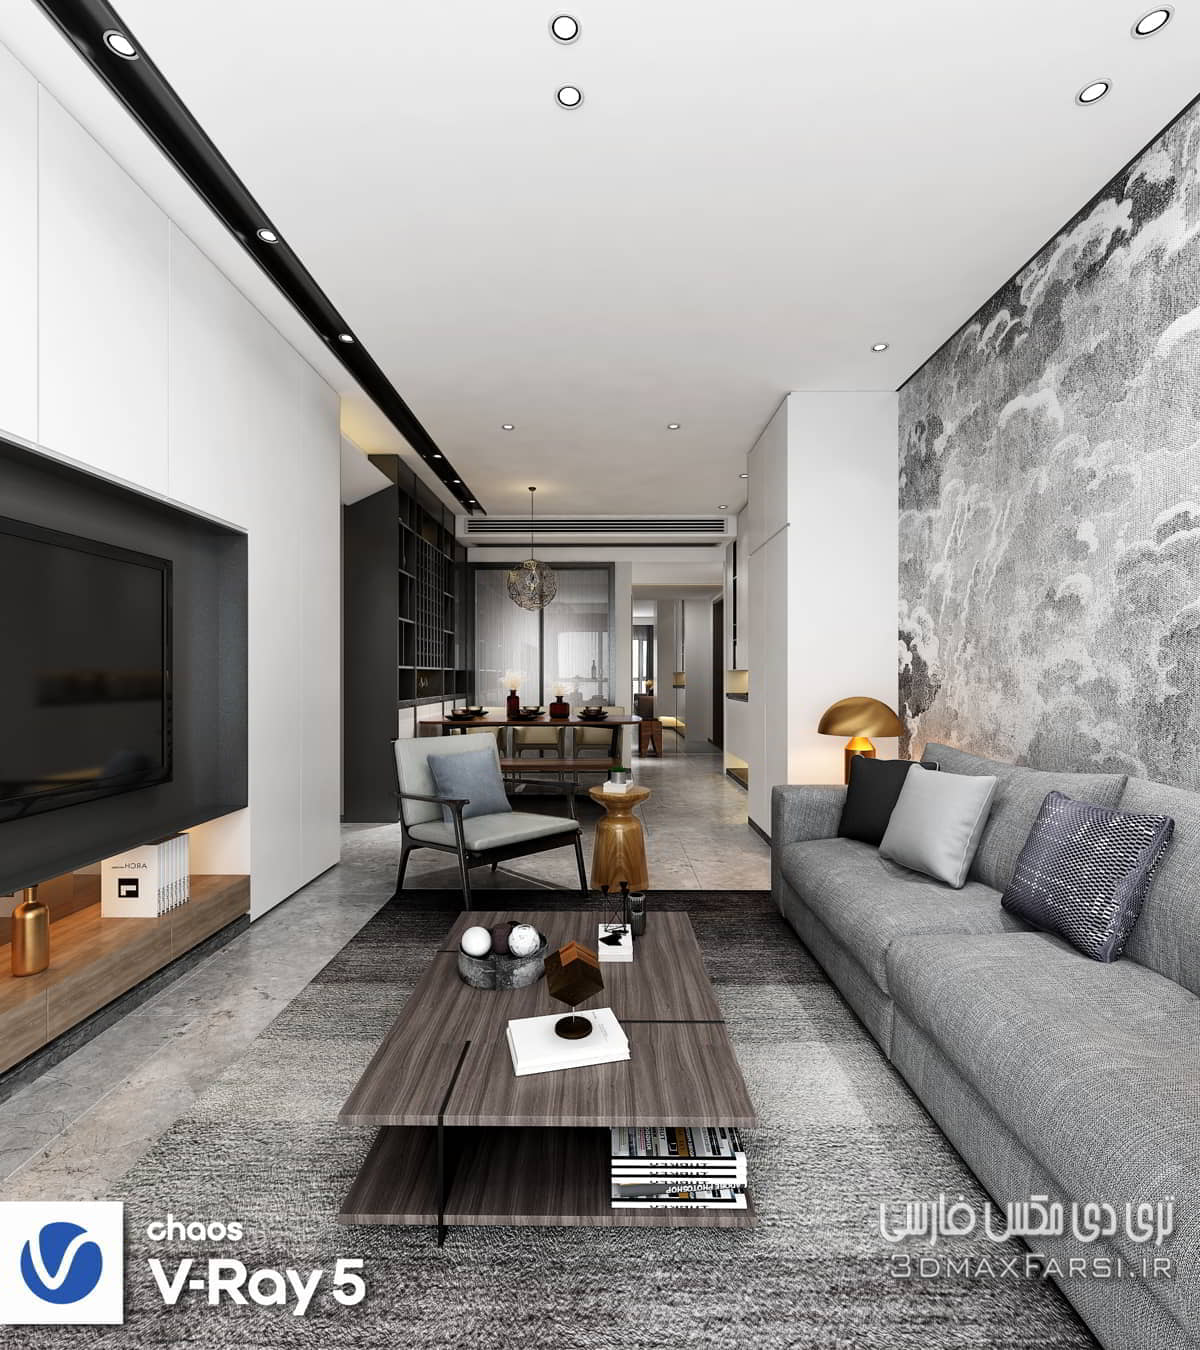 صحنه سه بعدی آپارتمان با طراحی و مبلمان کامل (مکس+ ویری)